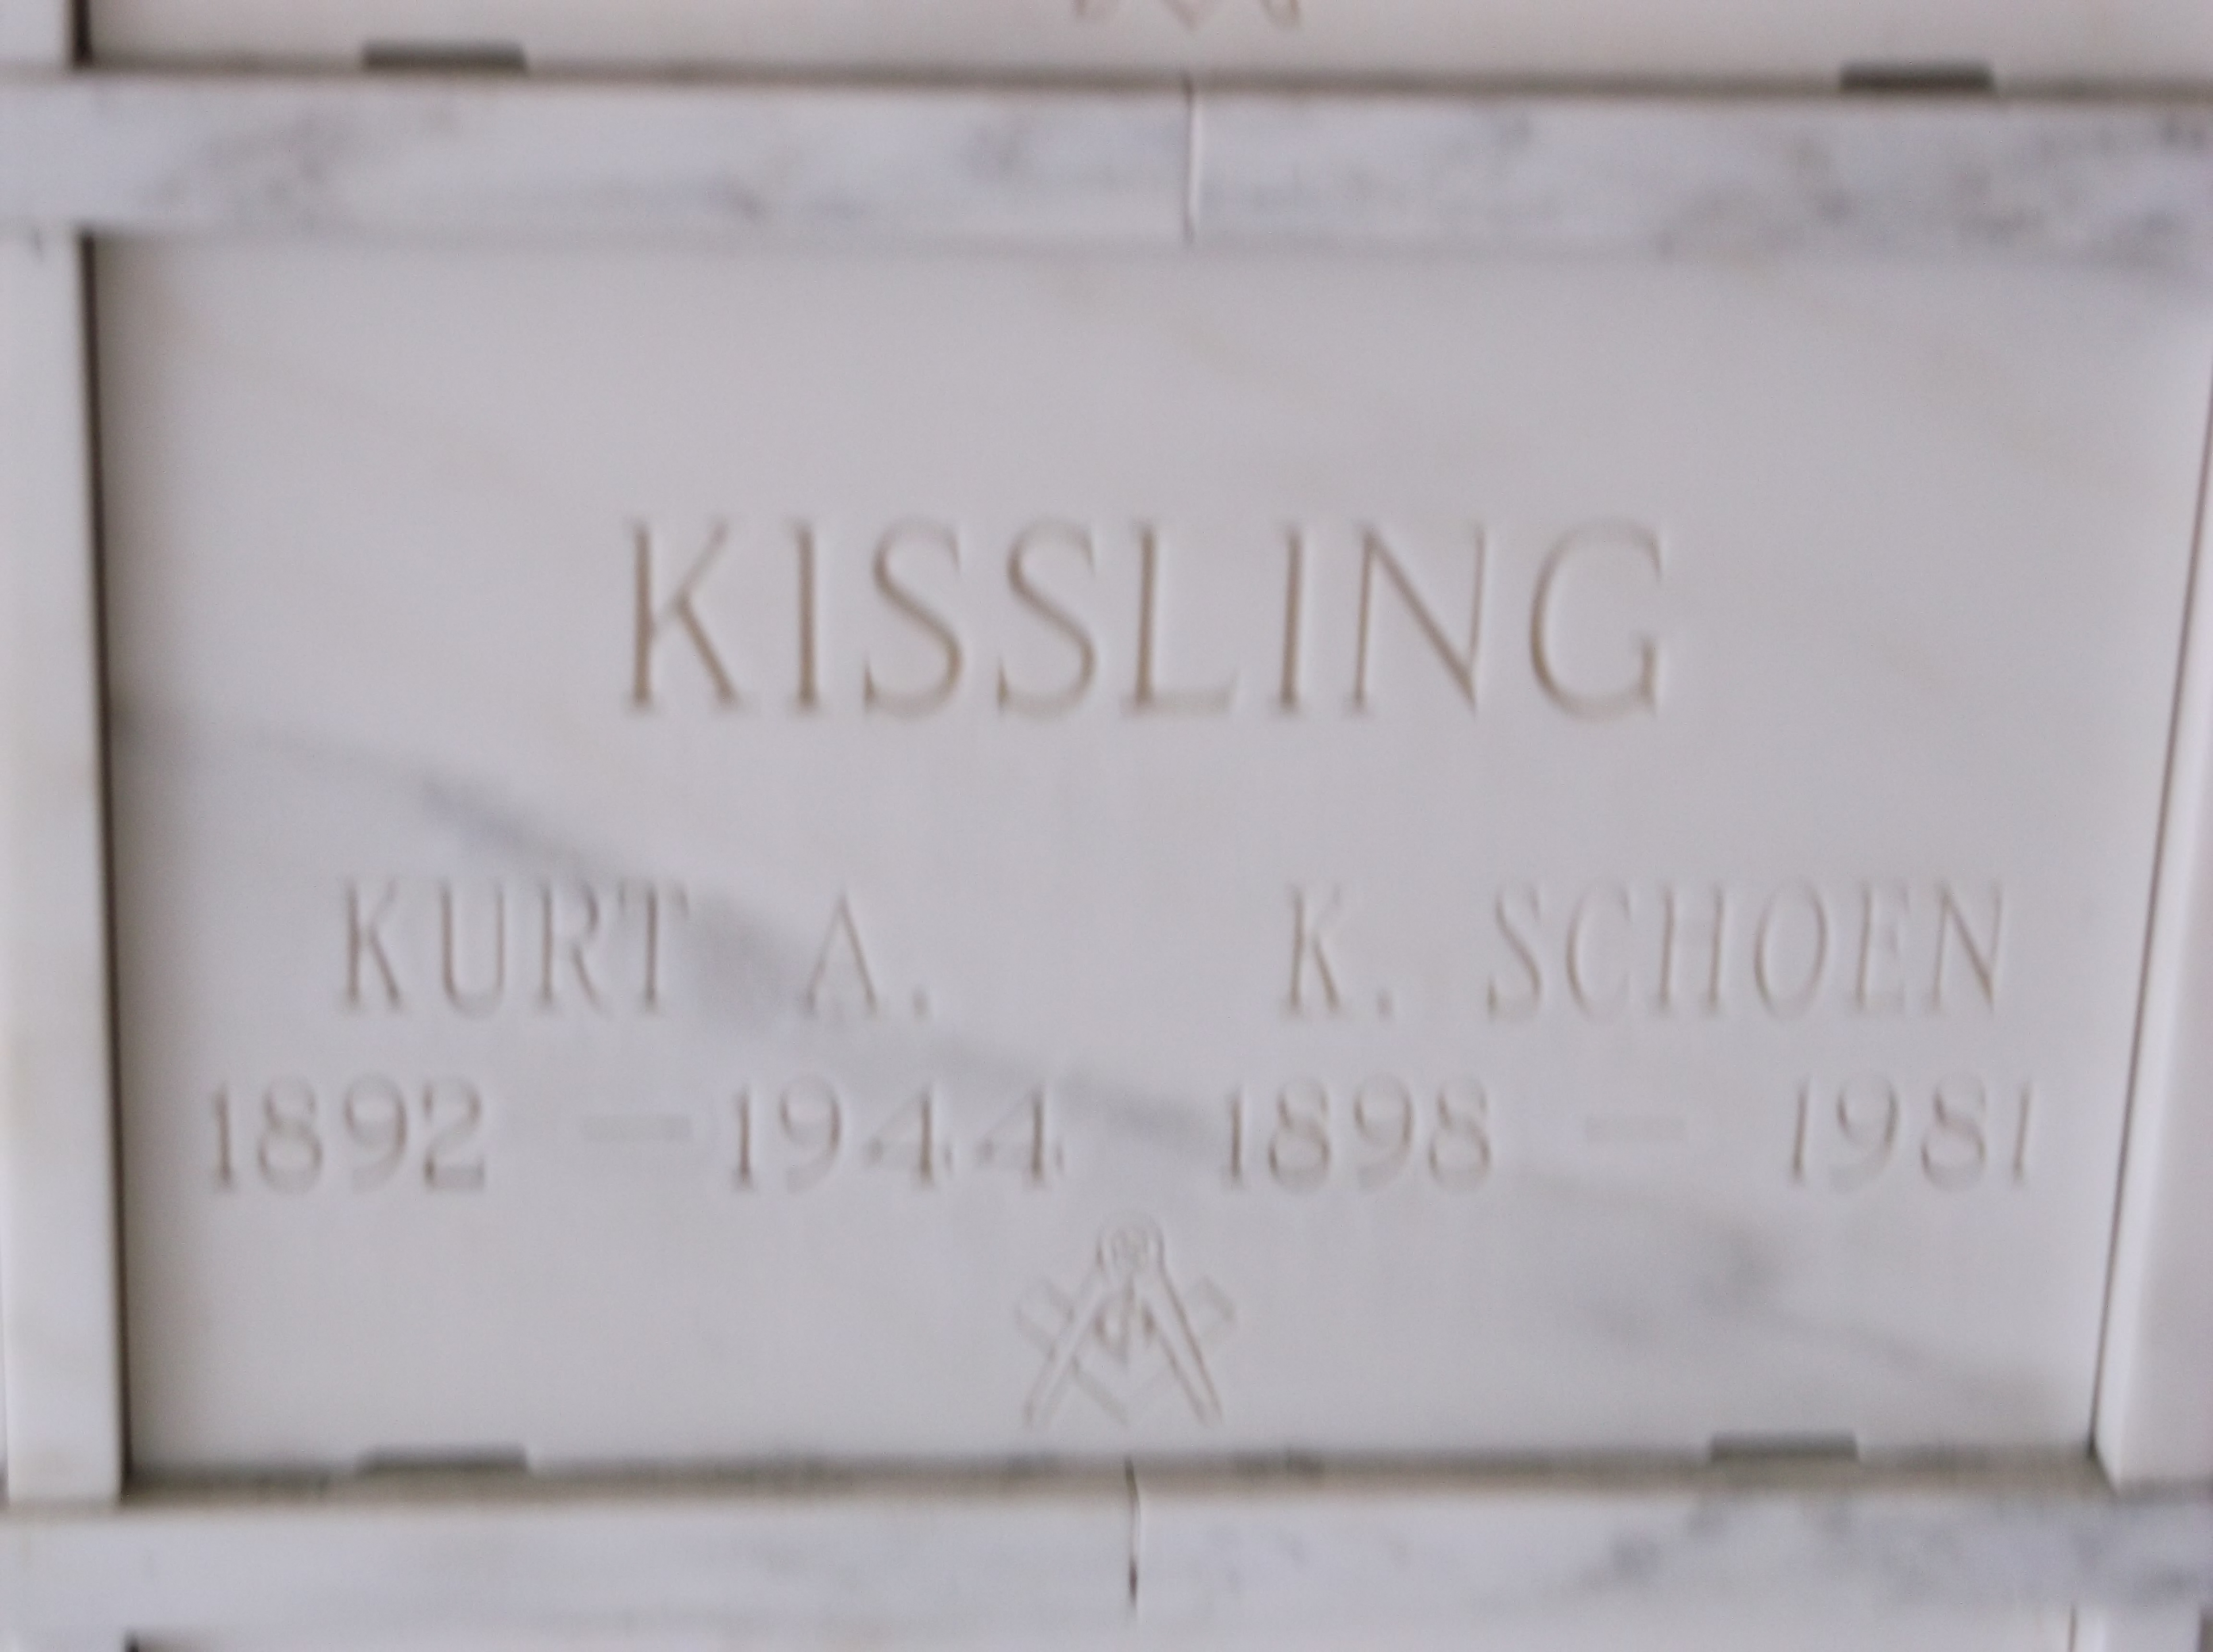 Kurt A Kissling